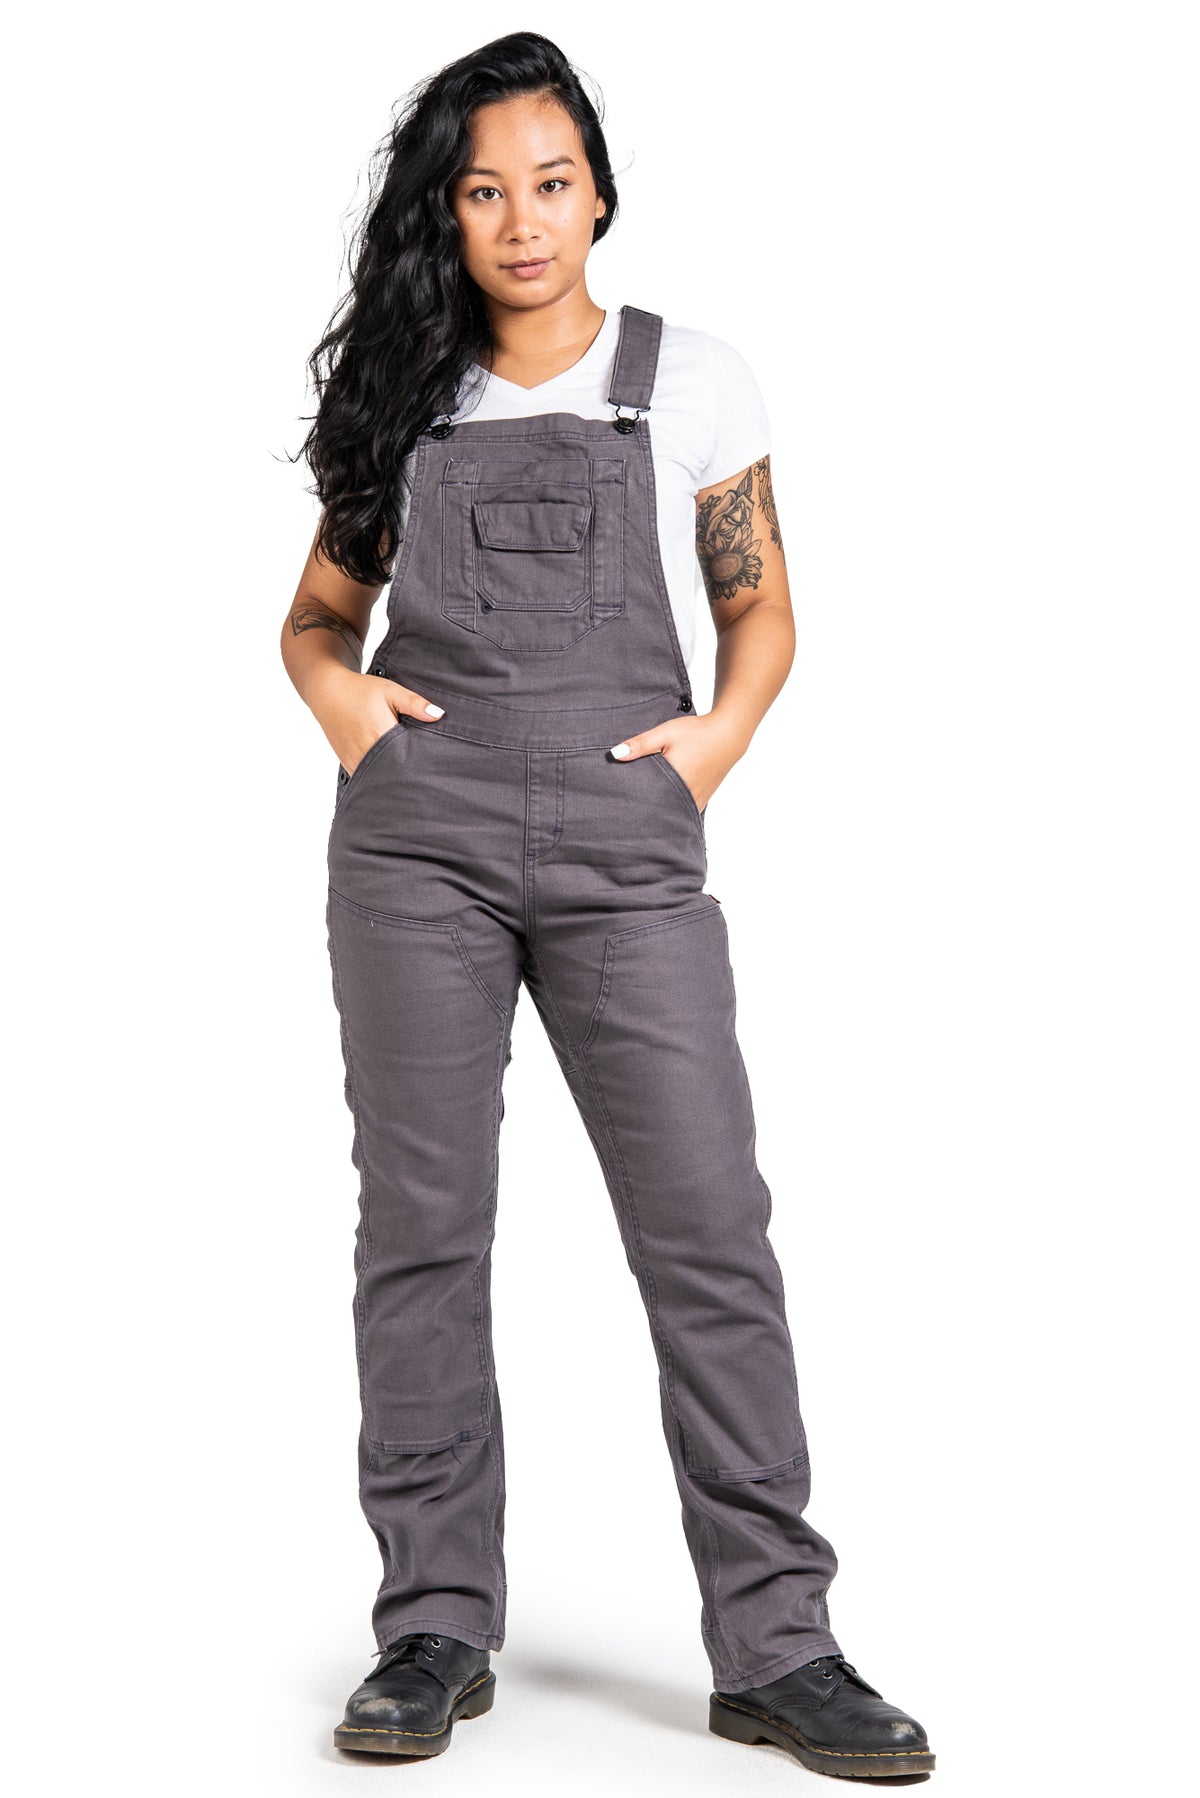 Dovetail Workwear Women&#39;s Freshly Overall_Dark Grey - Work World - Workwear, Work Boots, Safety Gear